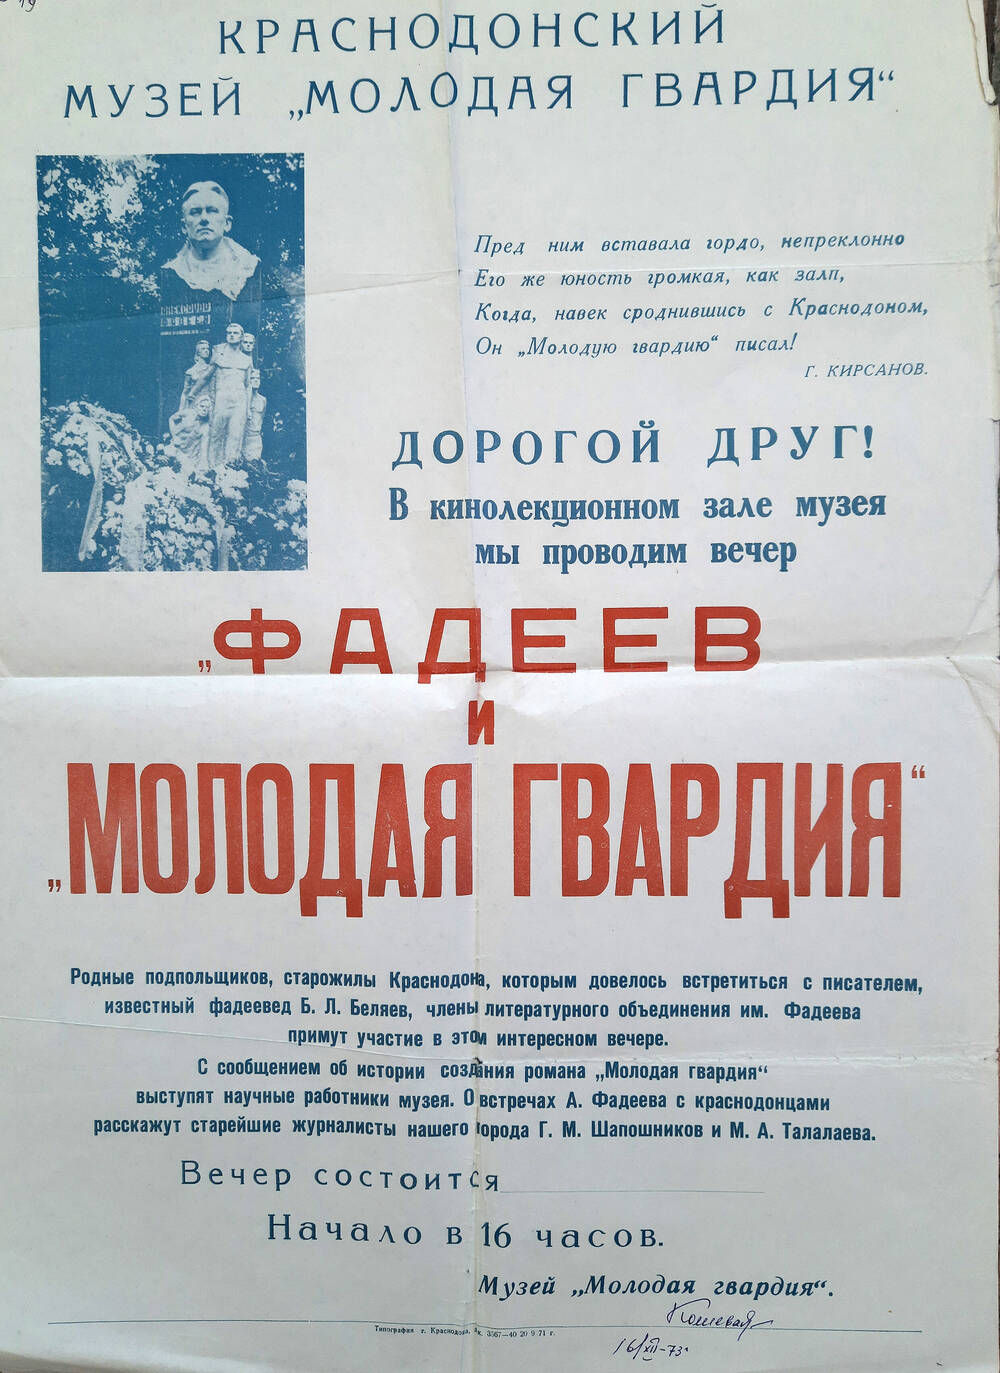 Афиша музея «Молодая гвардия» г. Краснодона о проведении вечера. 1973г.